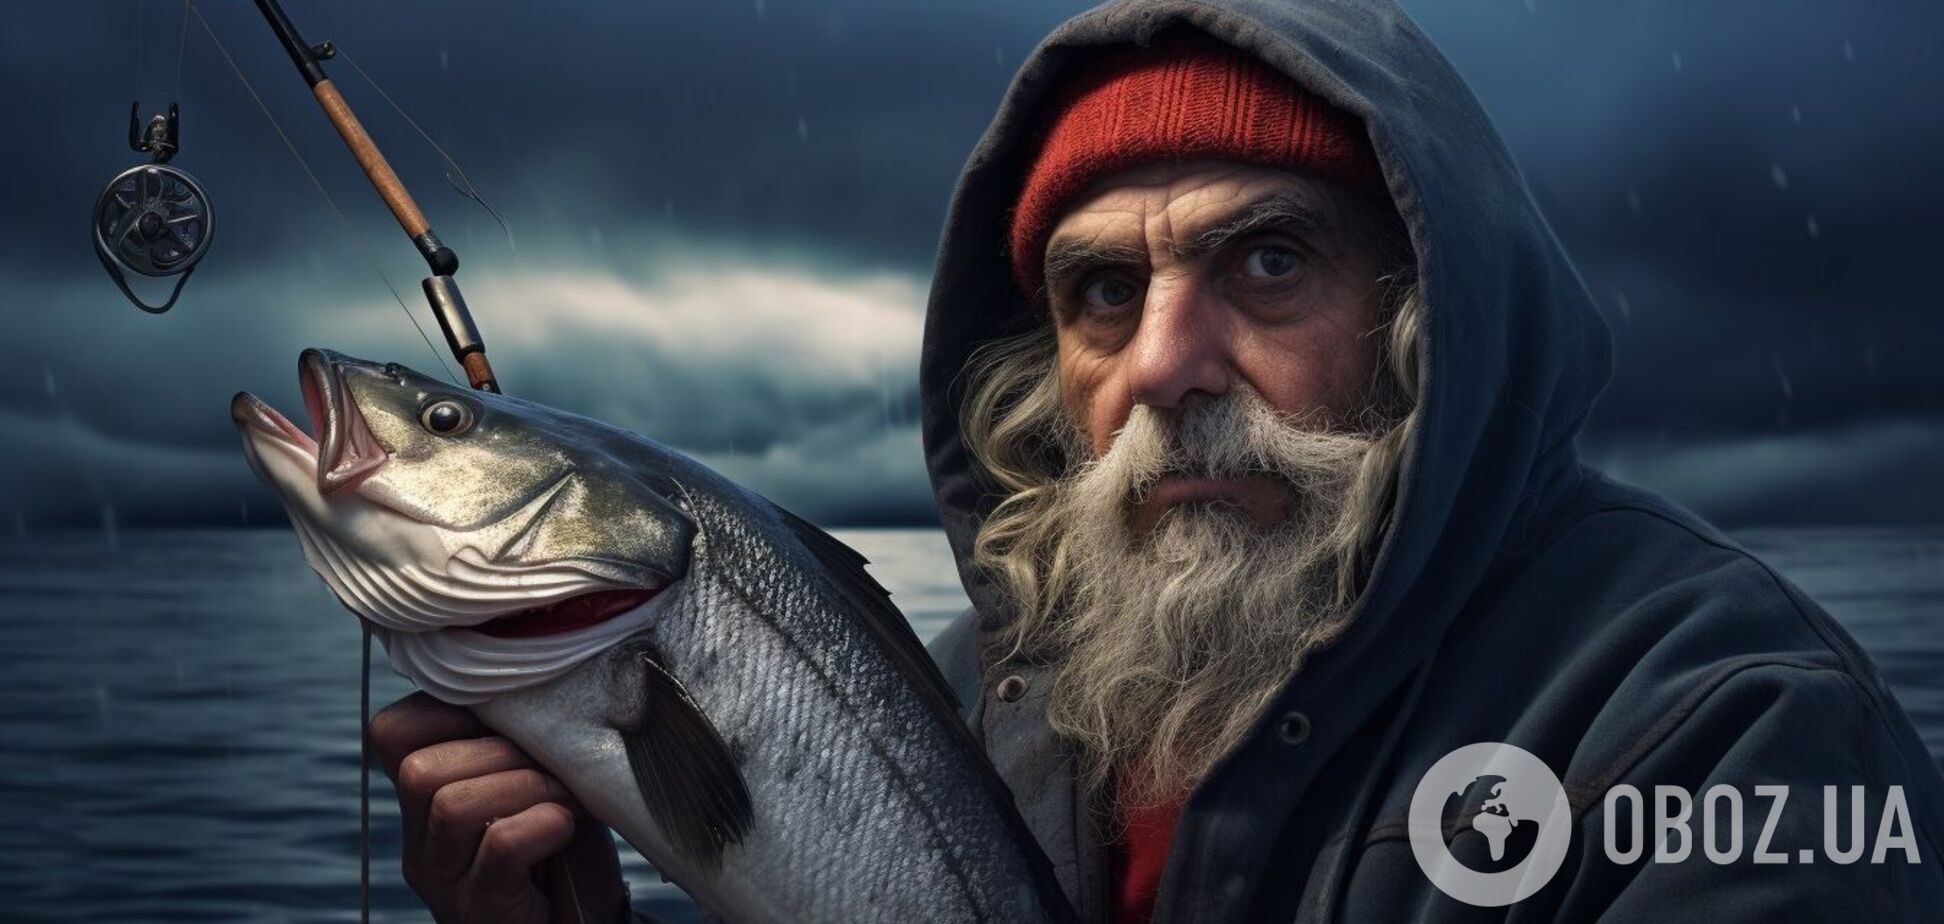 Як зробити, щоб риба добре клювала: прості поради рибалкам